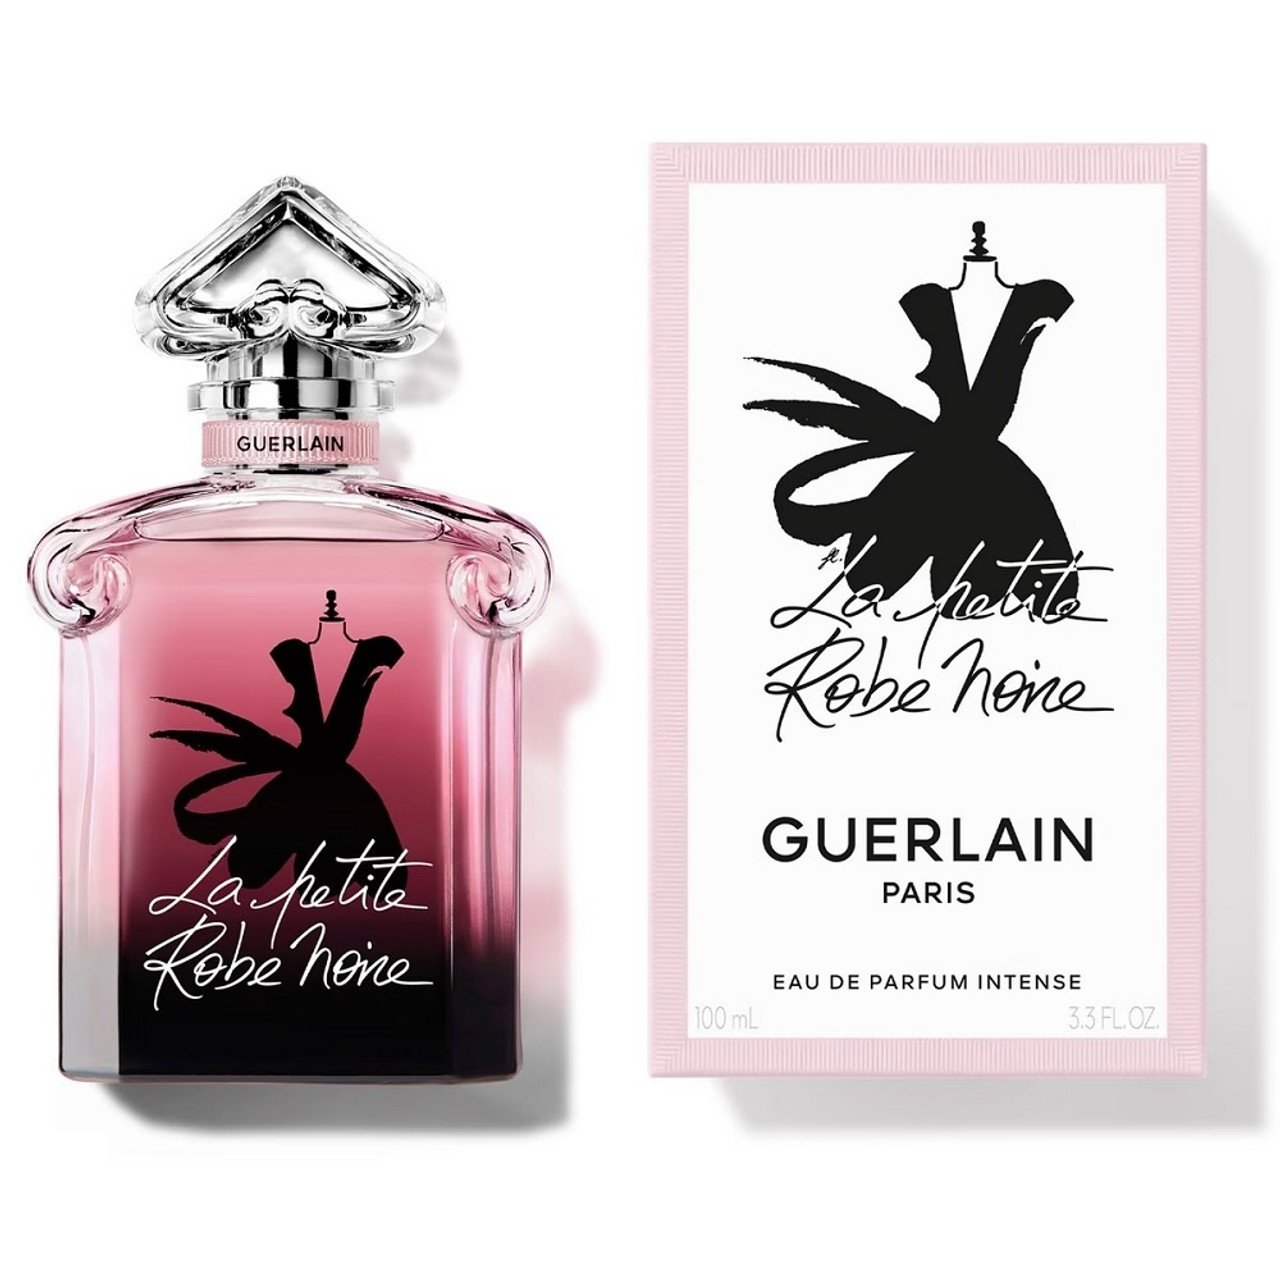 La Petite Robe Noire Rose Cherry by Guerlain » Reviews & Perfume Facts